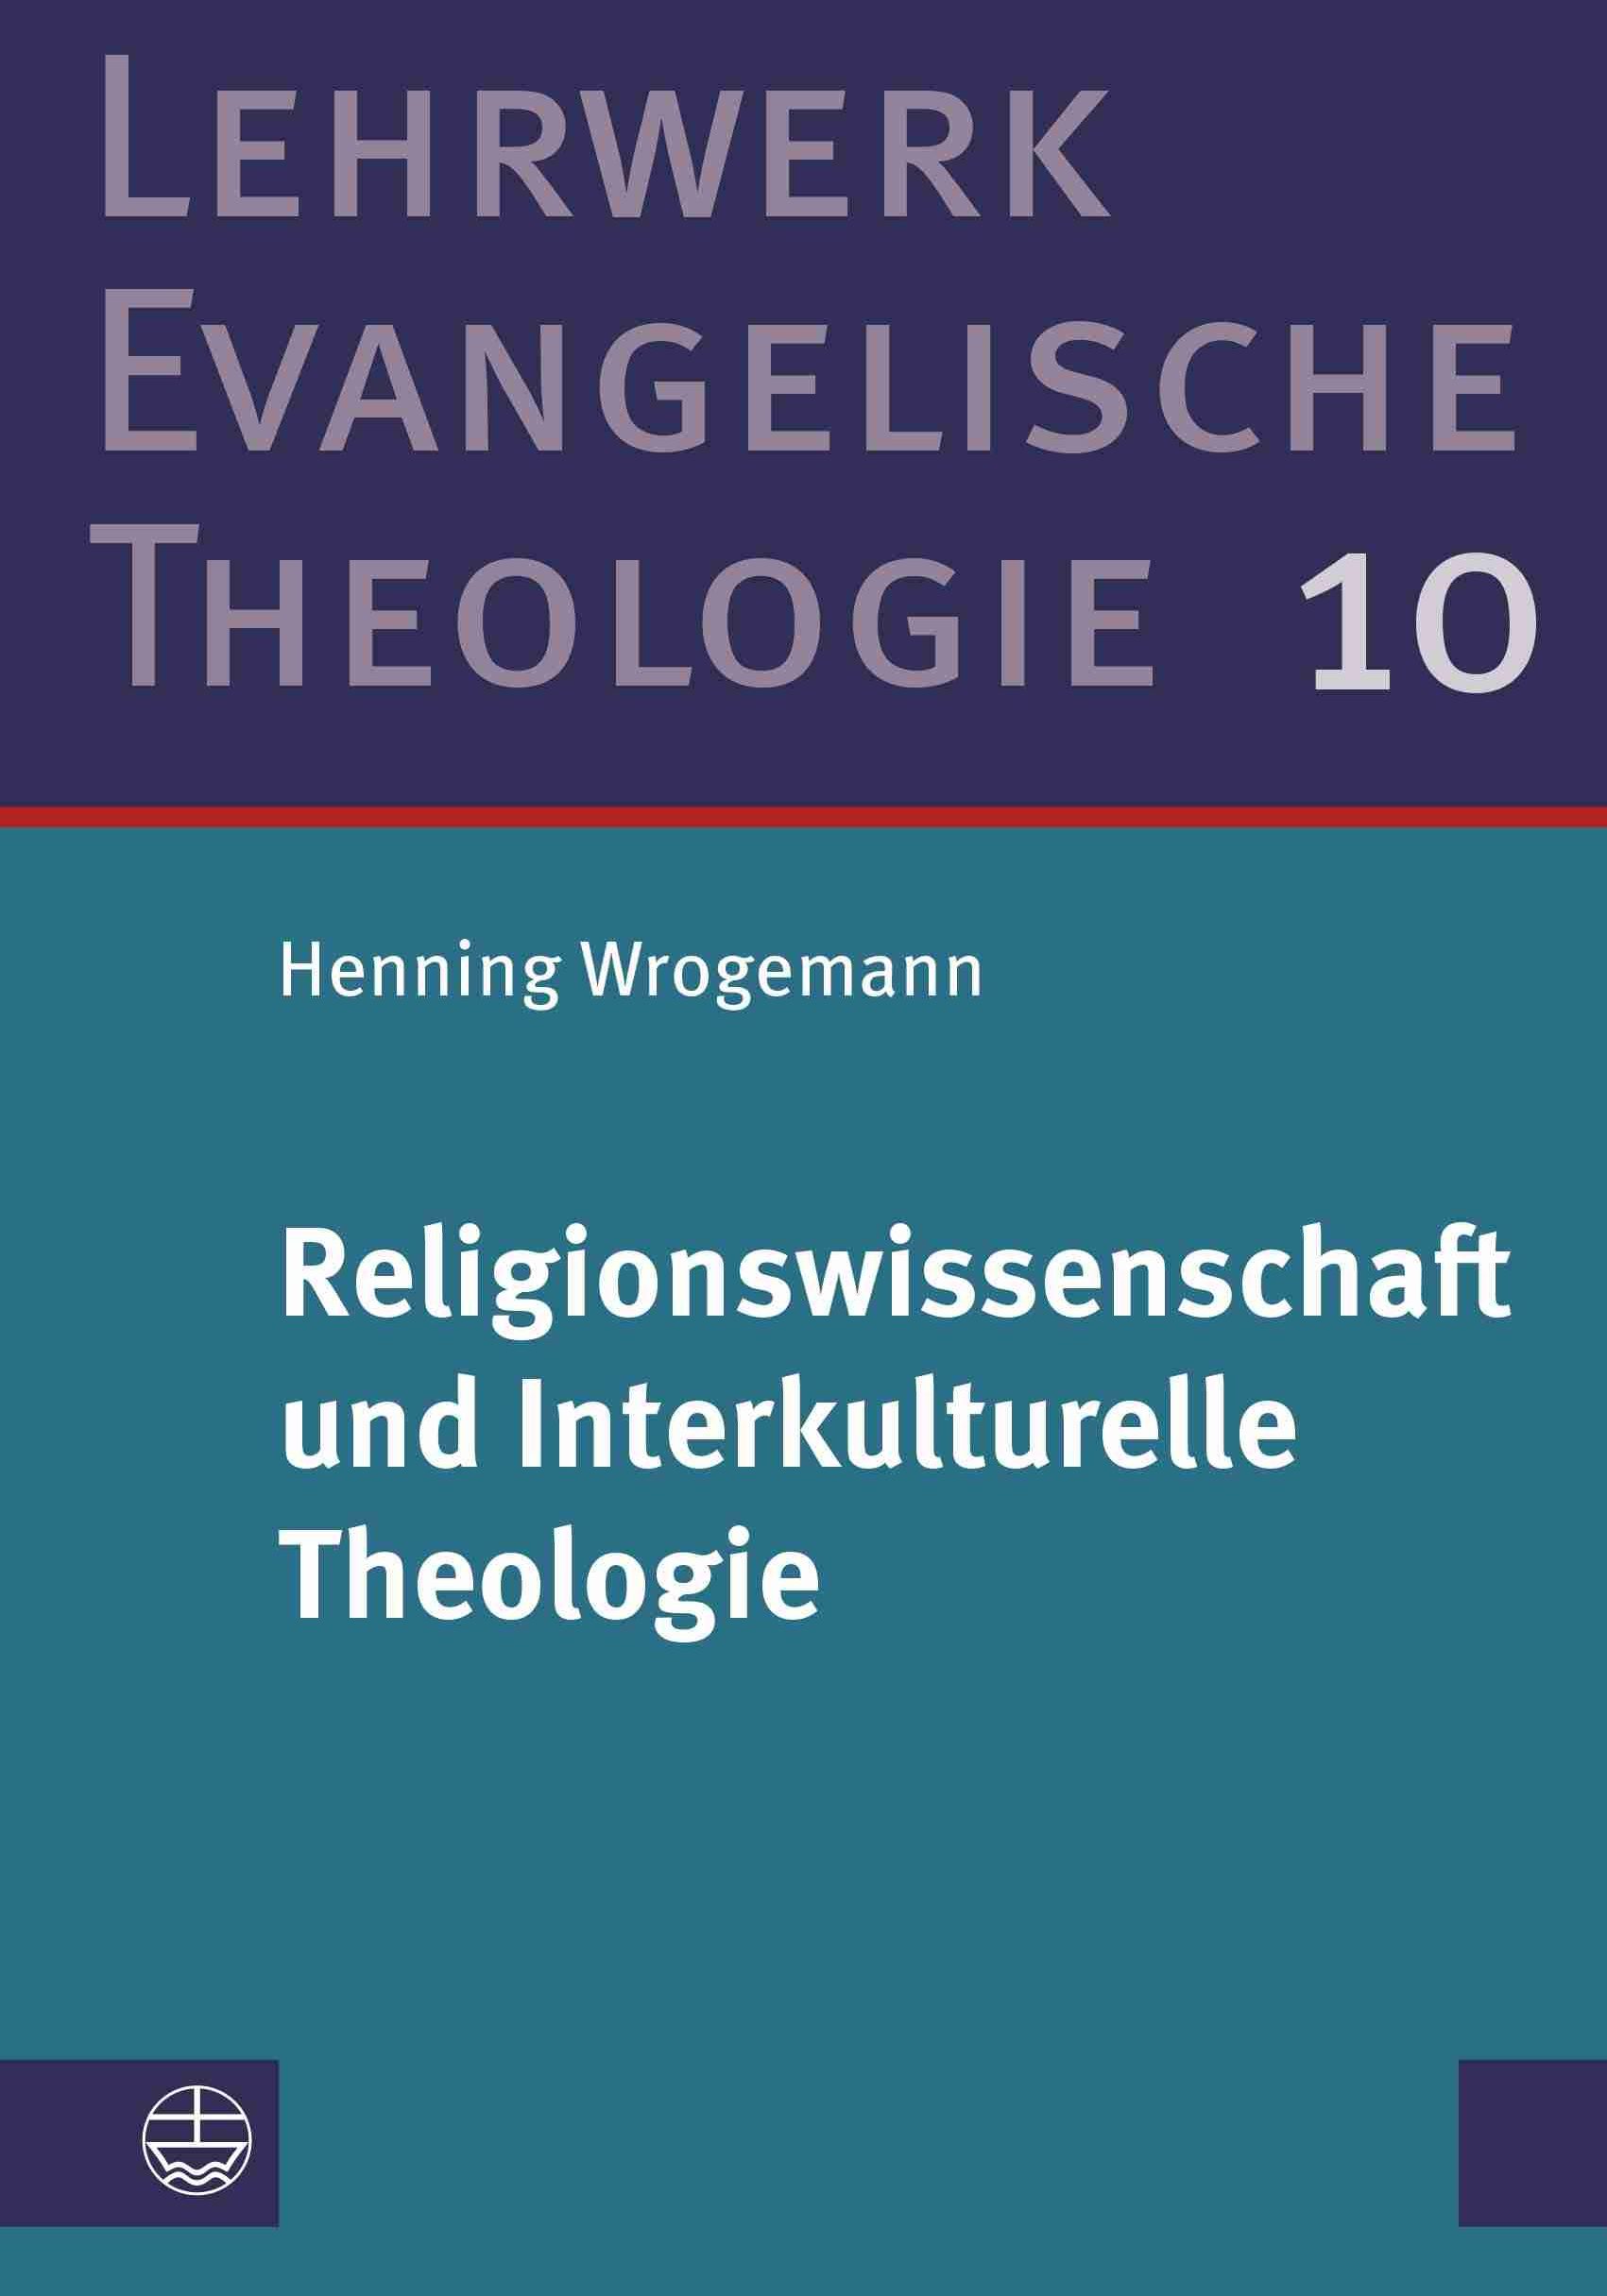 Bild zum Beitrag Religionswissenschaft und Interkulturelle Theologie